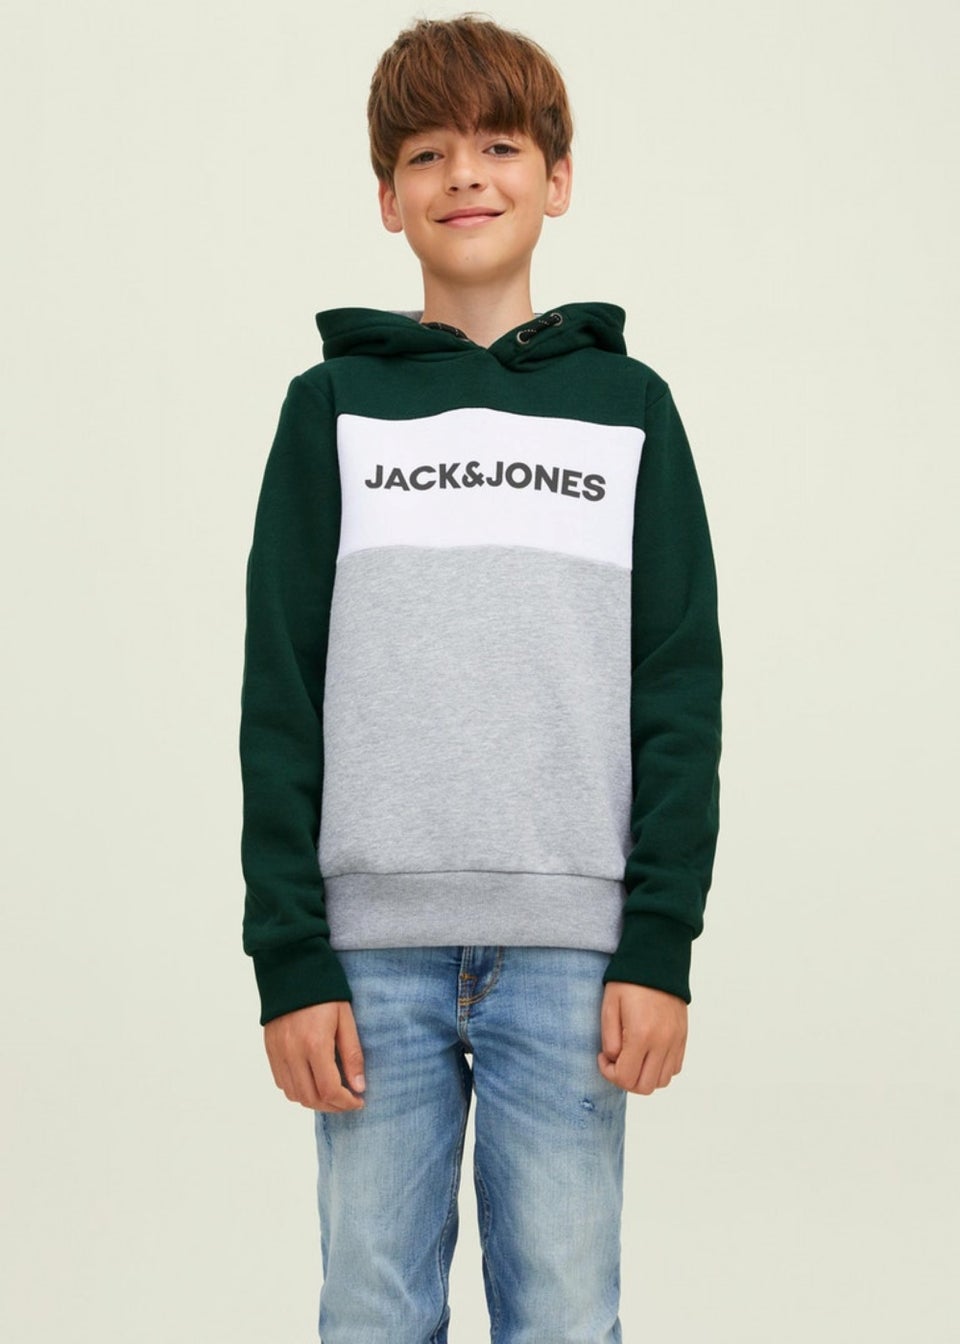 Jack & Jones Junior Green Logo Blocking Hoodie (8-16yrs) - Matalan